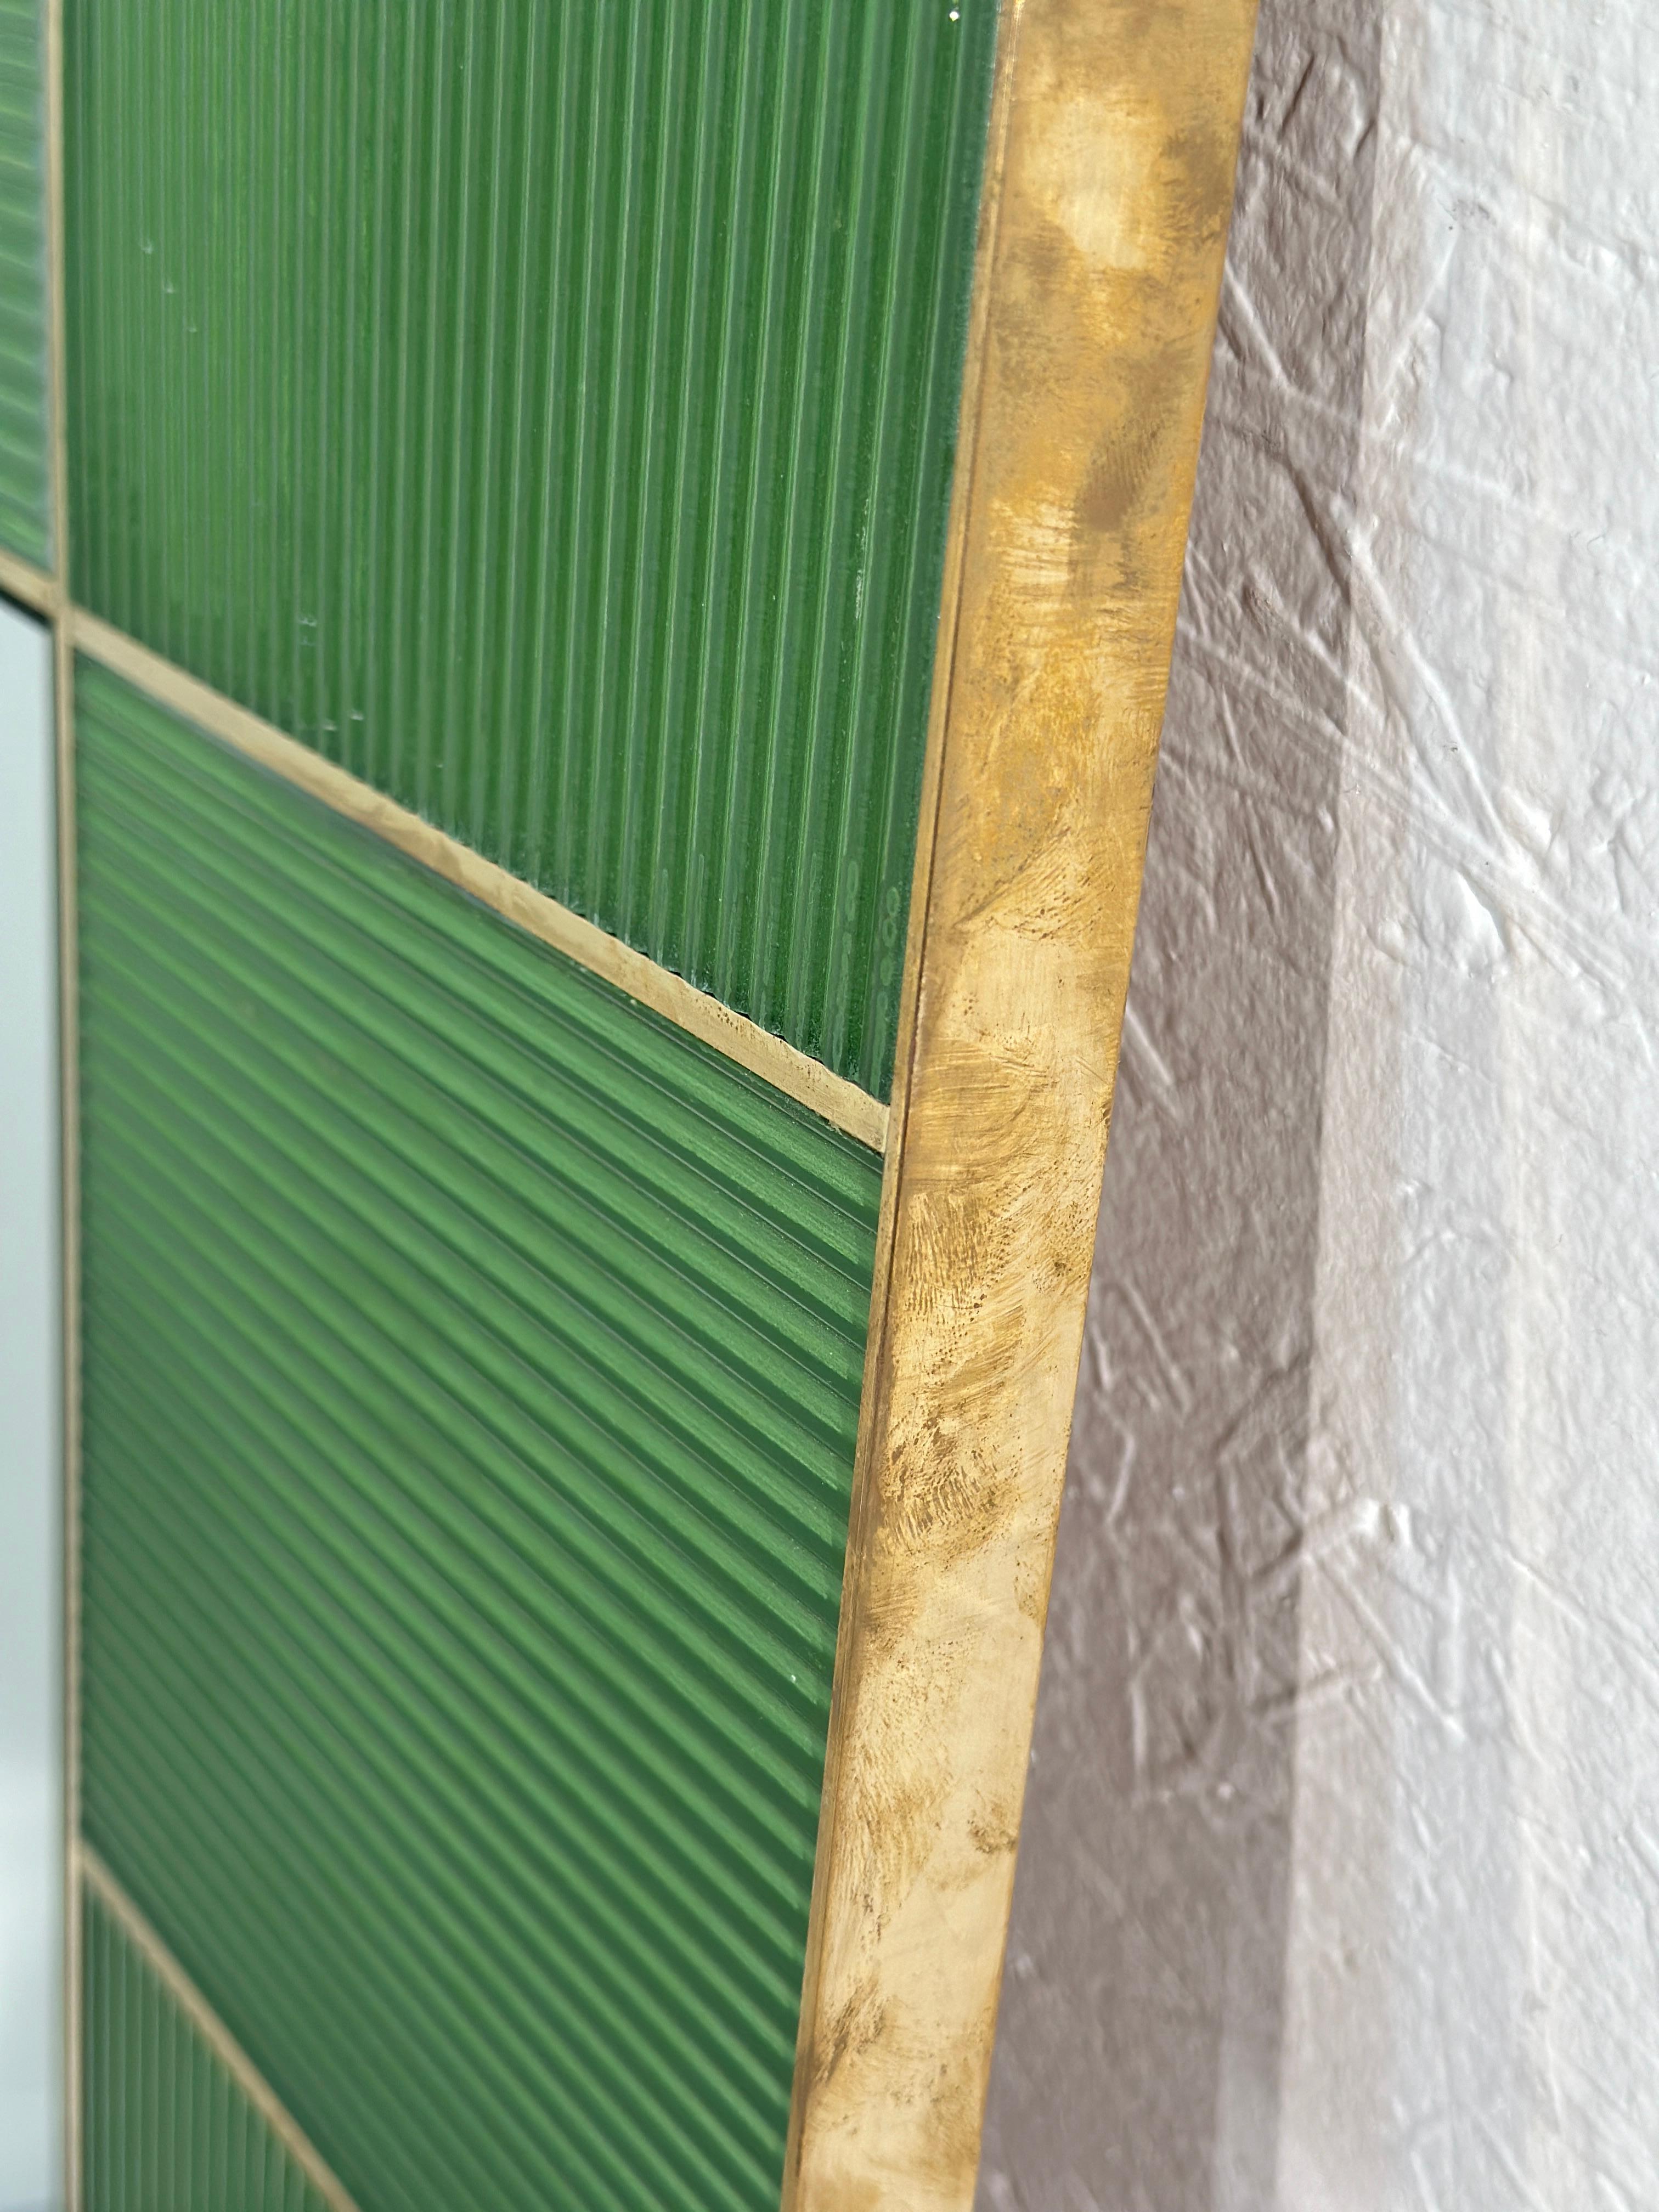 Der rechteckige italienische Vintage-Wandspiegel aus den 1980er Jahren hat einen charmanten grünen Rahmen mit Messingdetails. Sein schlankes Design spiegelt den ikonischen Stil der Epoche wider und verleiht jedem Raum einen Hauch von Retro-Eleganz.

